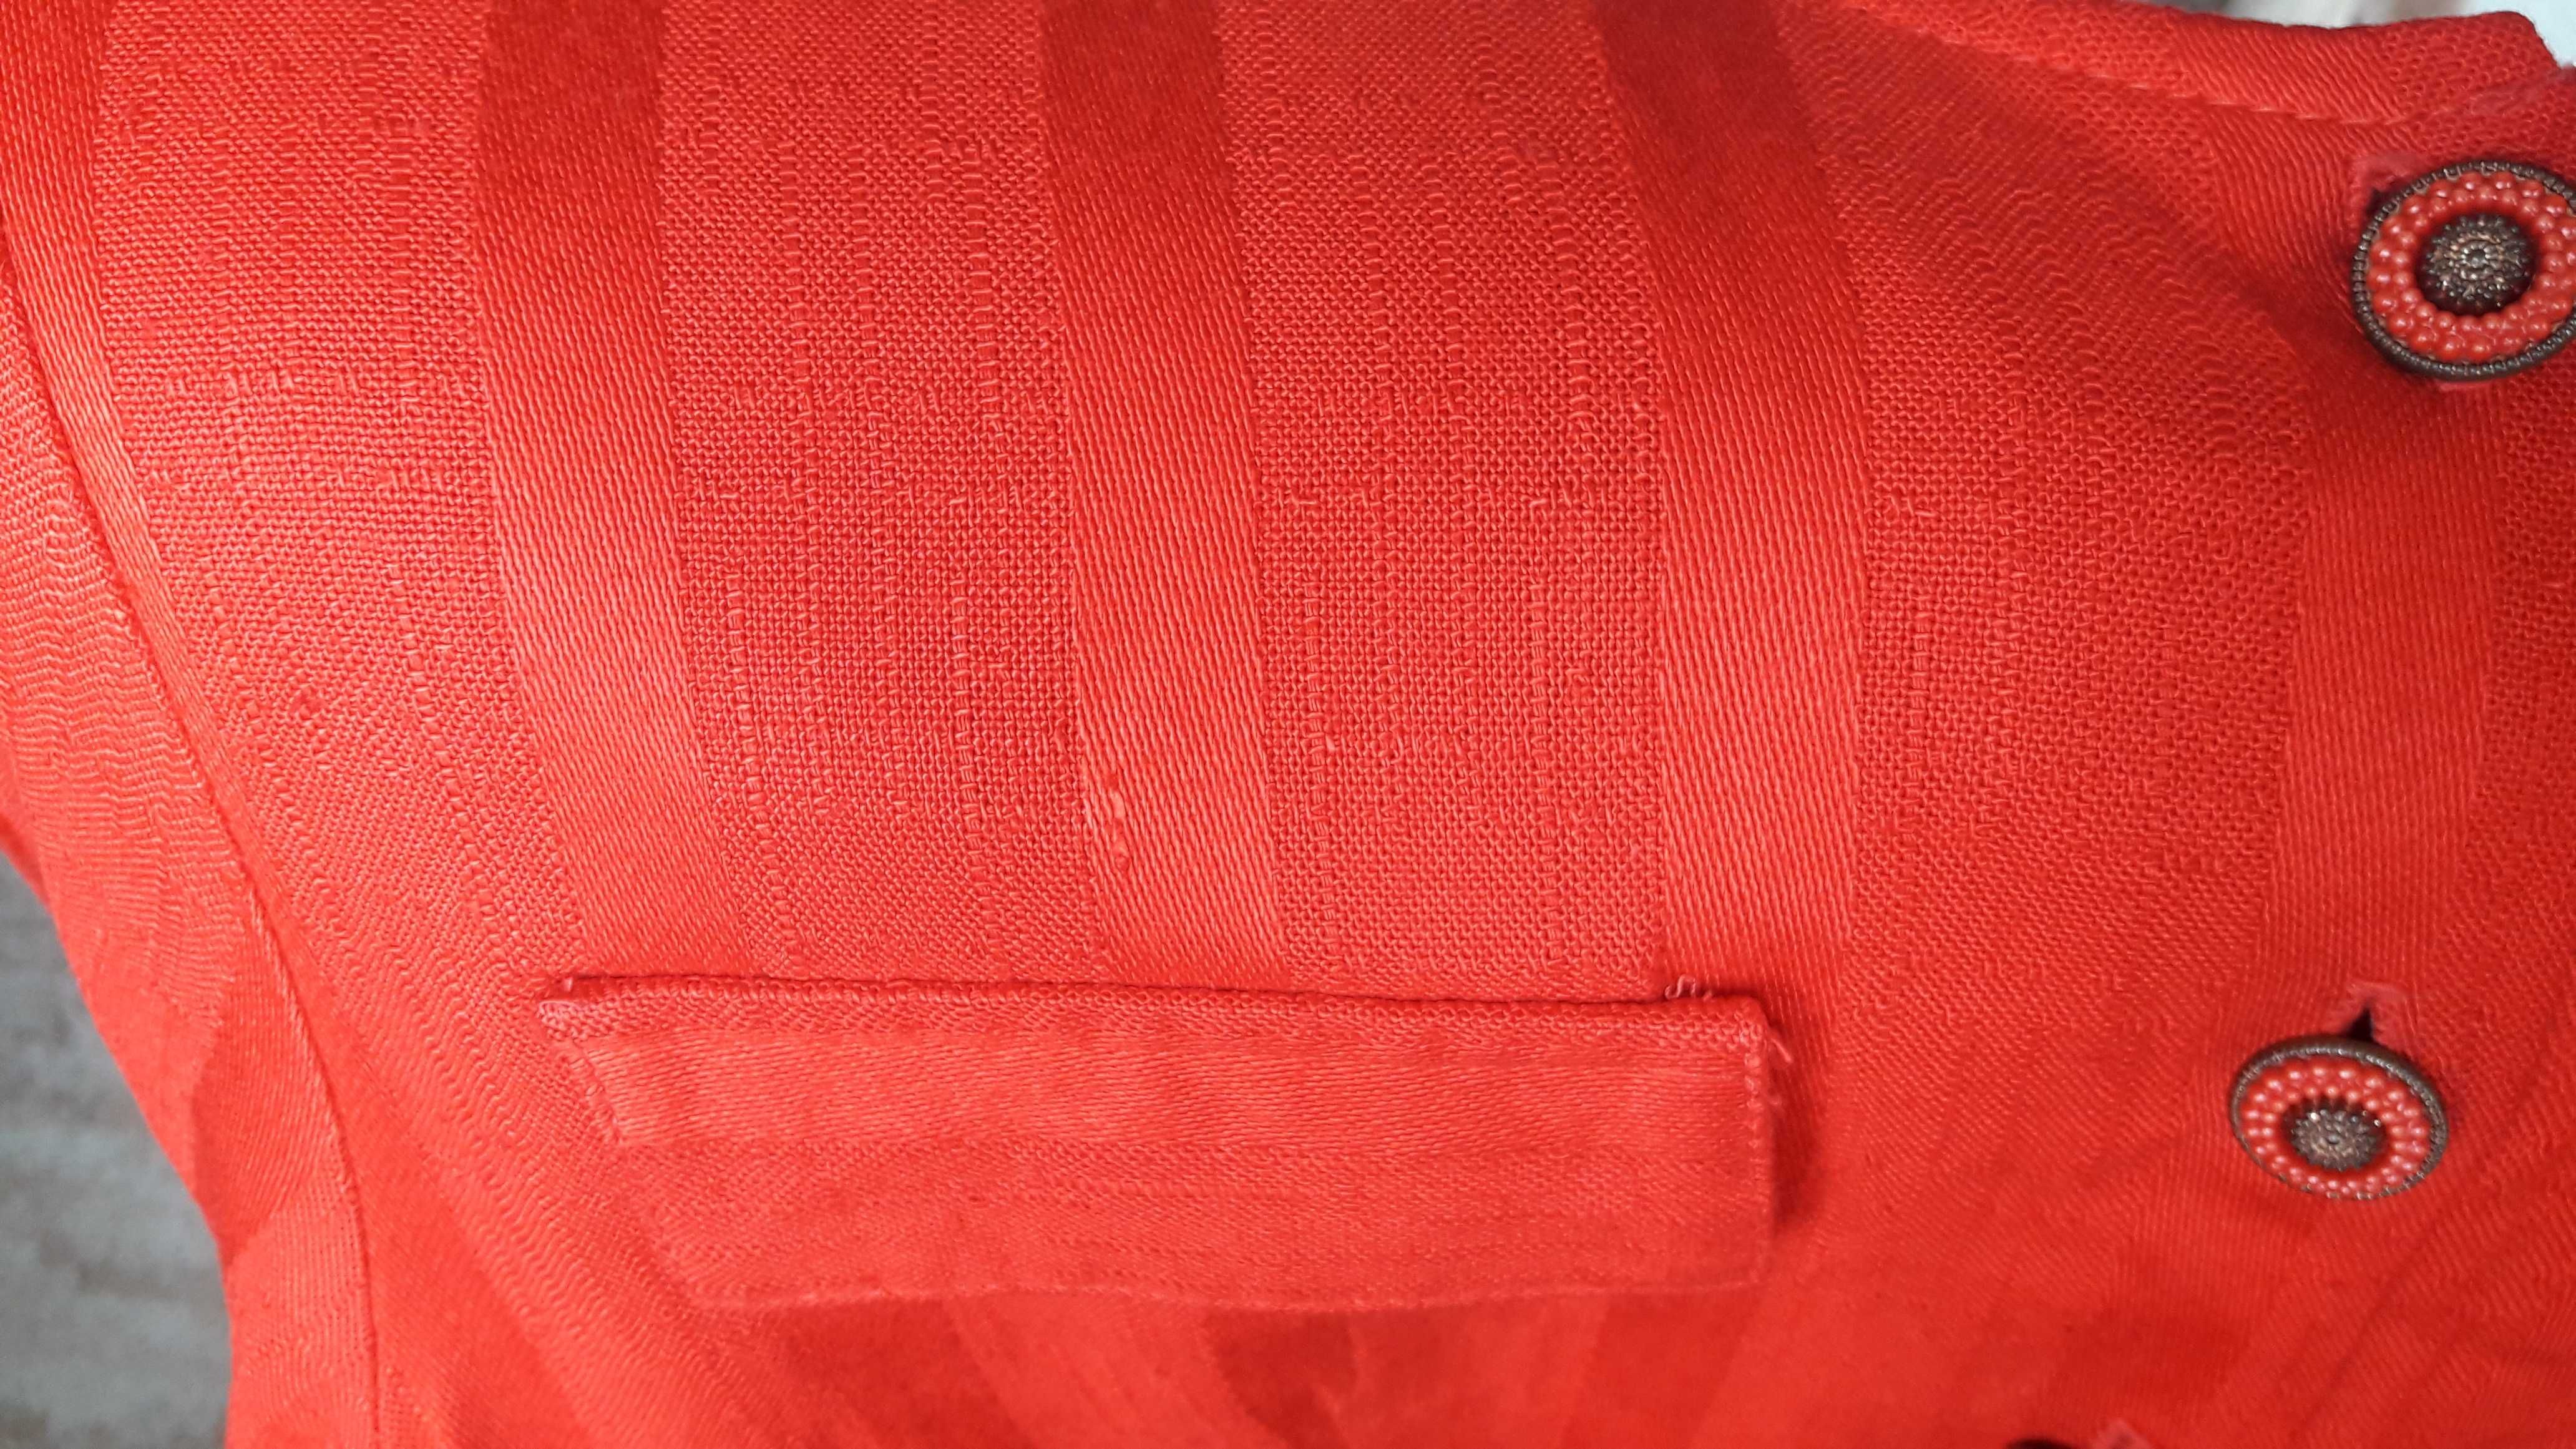 Komplet spódnica, żakiet czerwony r.36